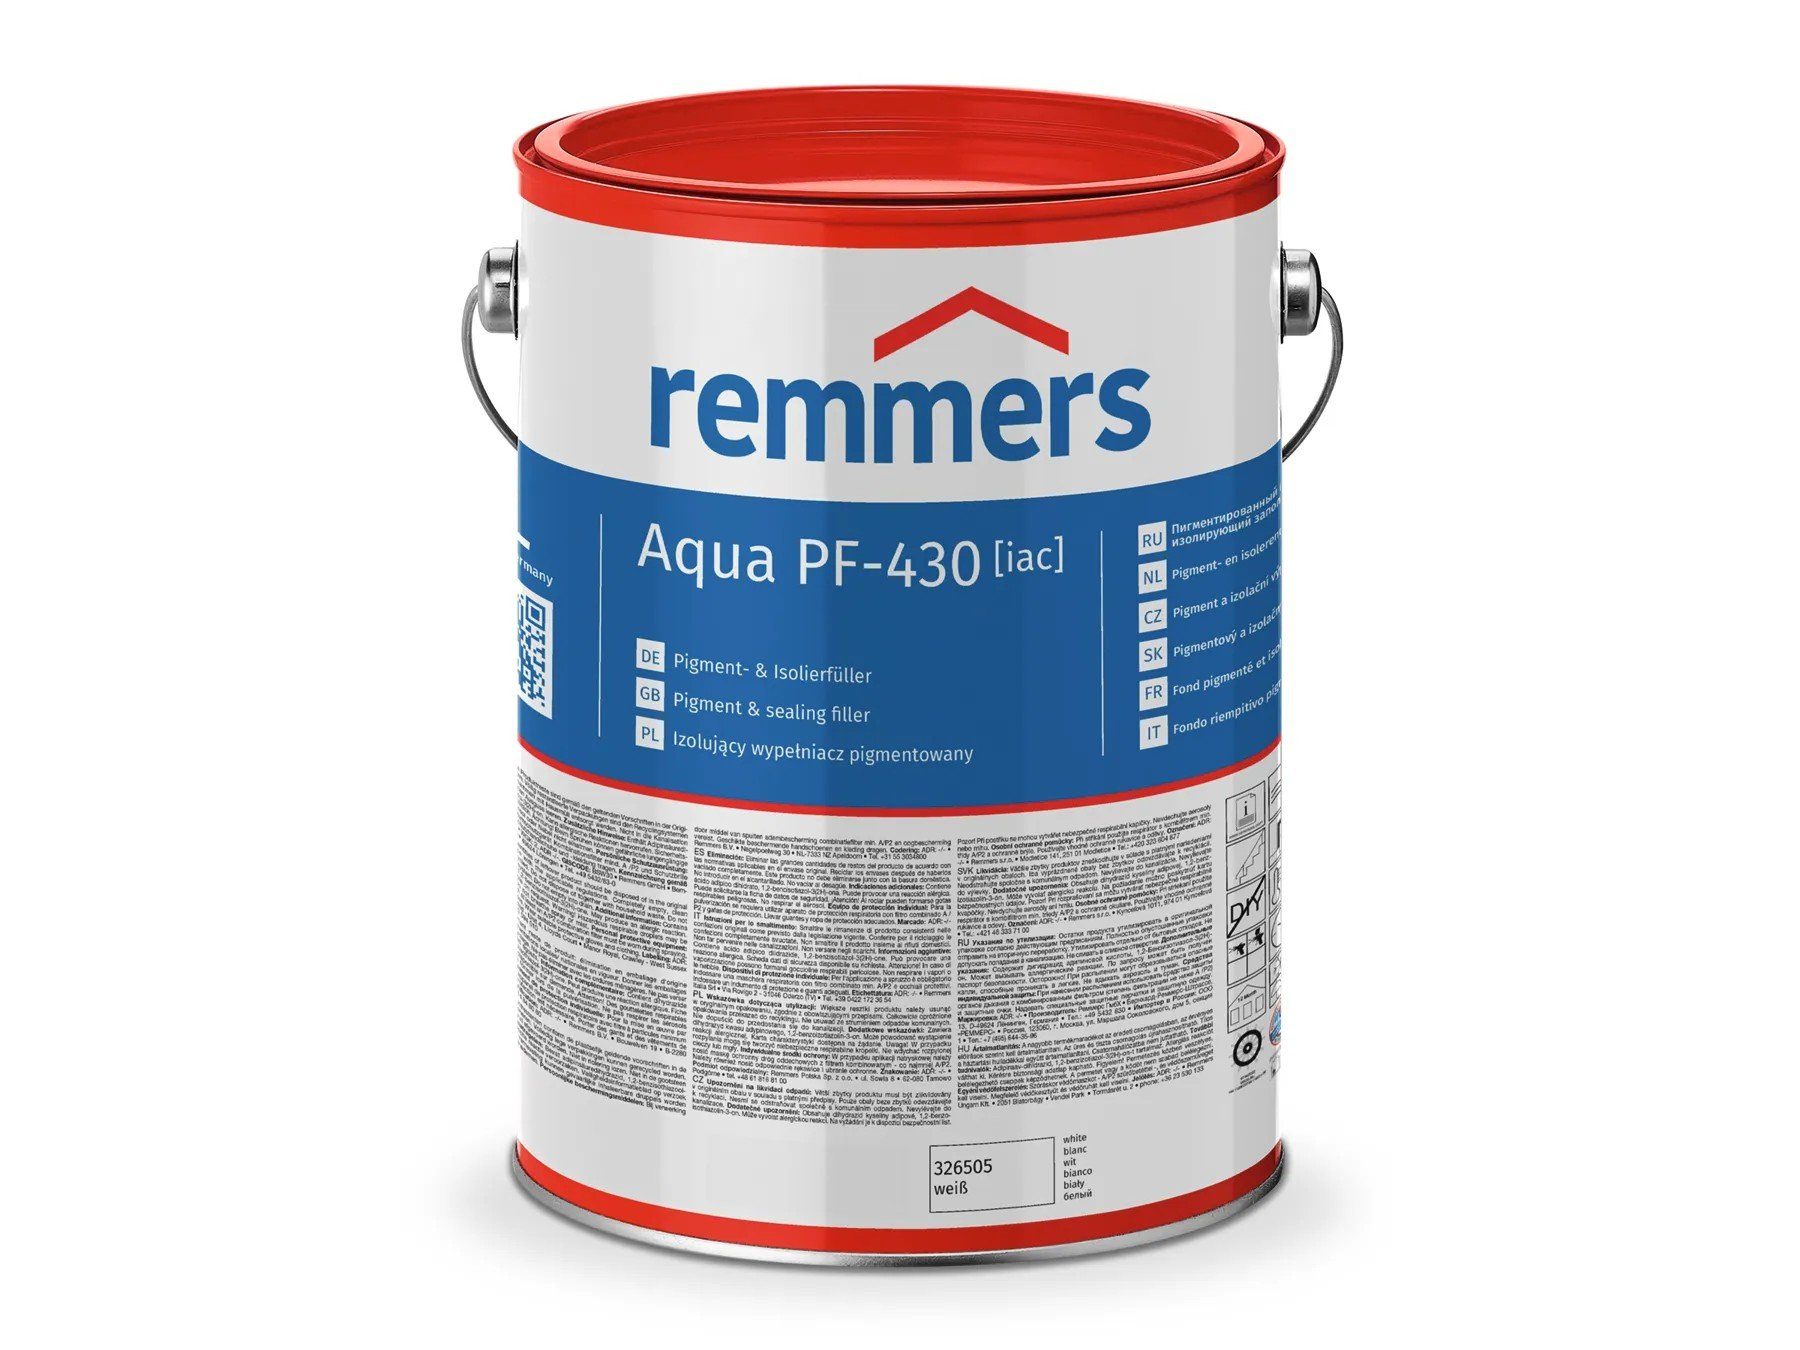 Remmers Isolierfüller Isoliergrundierung PF-430-Pigment- weiß [iac] Aqua und